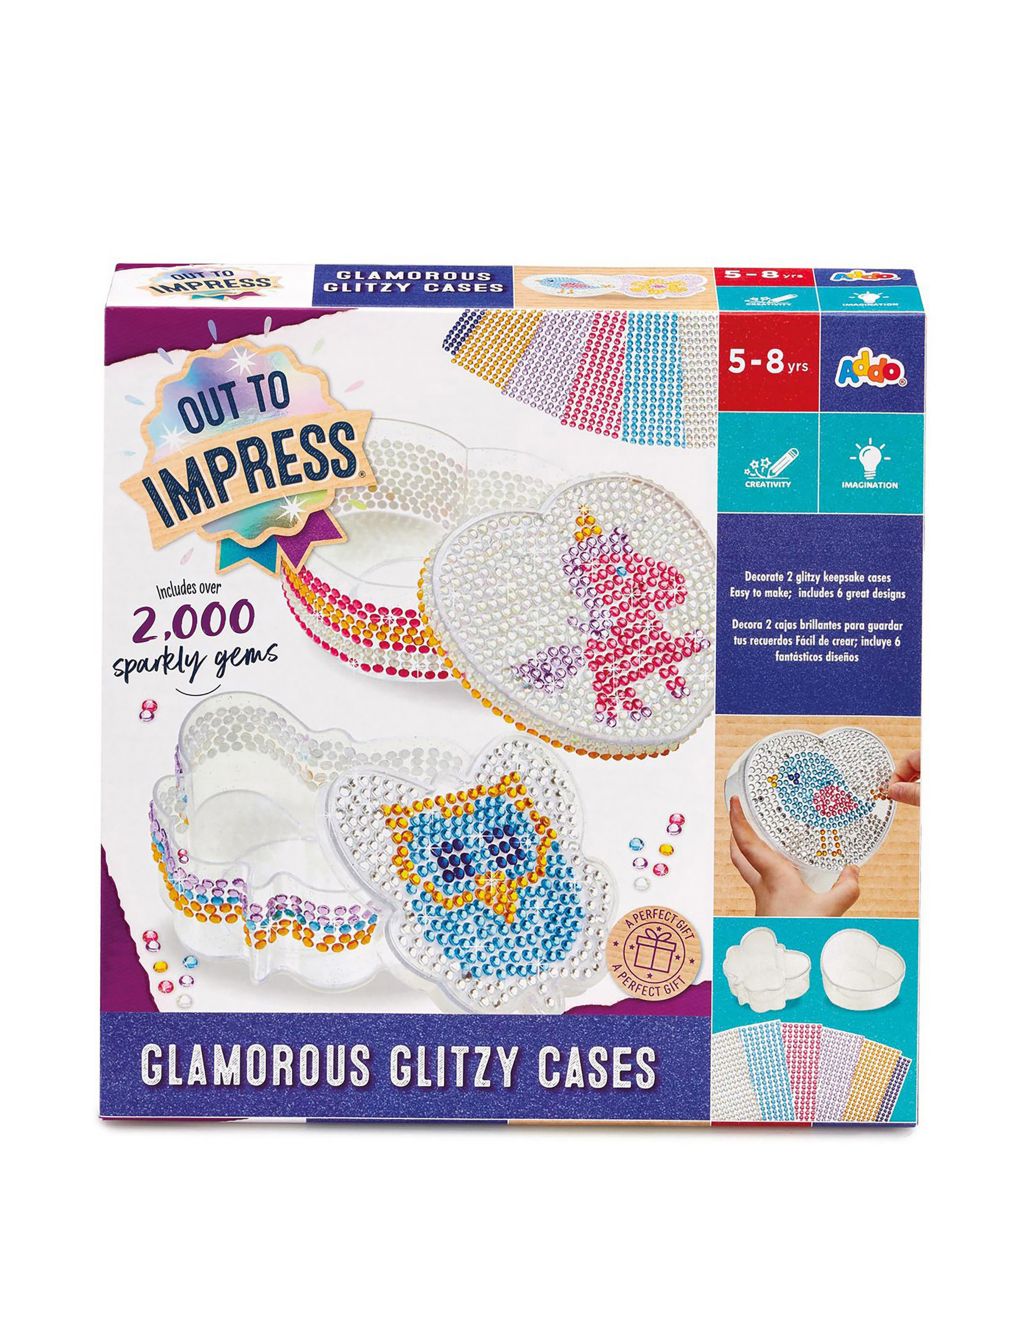 Glamorous Glitzy Cases (5-8 Yrs)